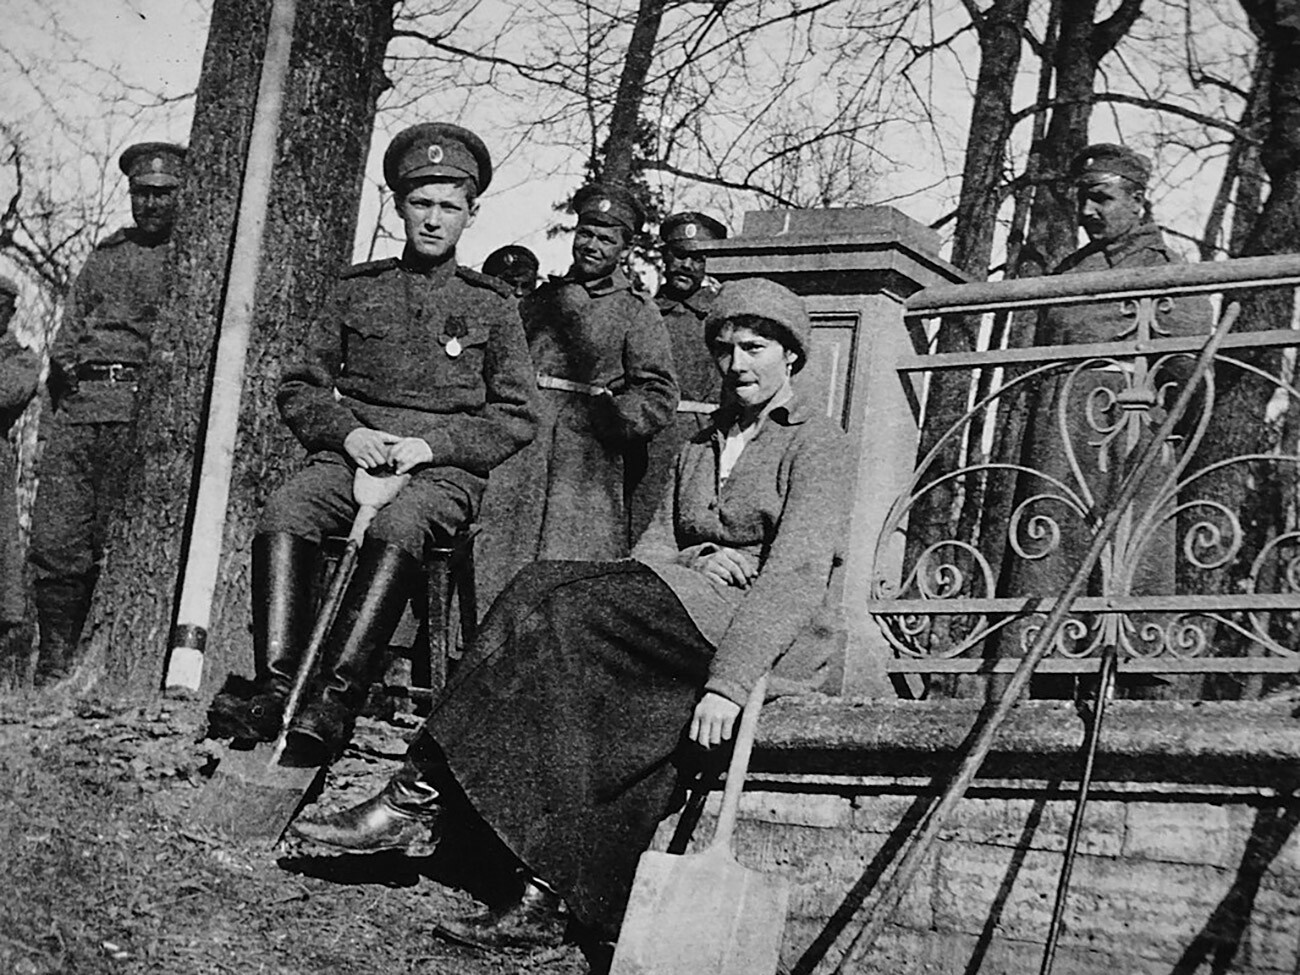 Tatjana e Aleksej sotto scorta militari durante il periodo di prigionia a Tsarskoe Selo

